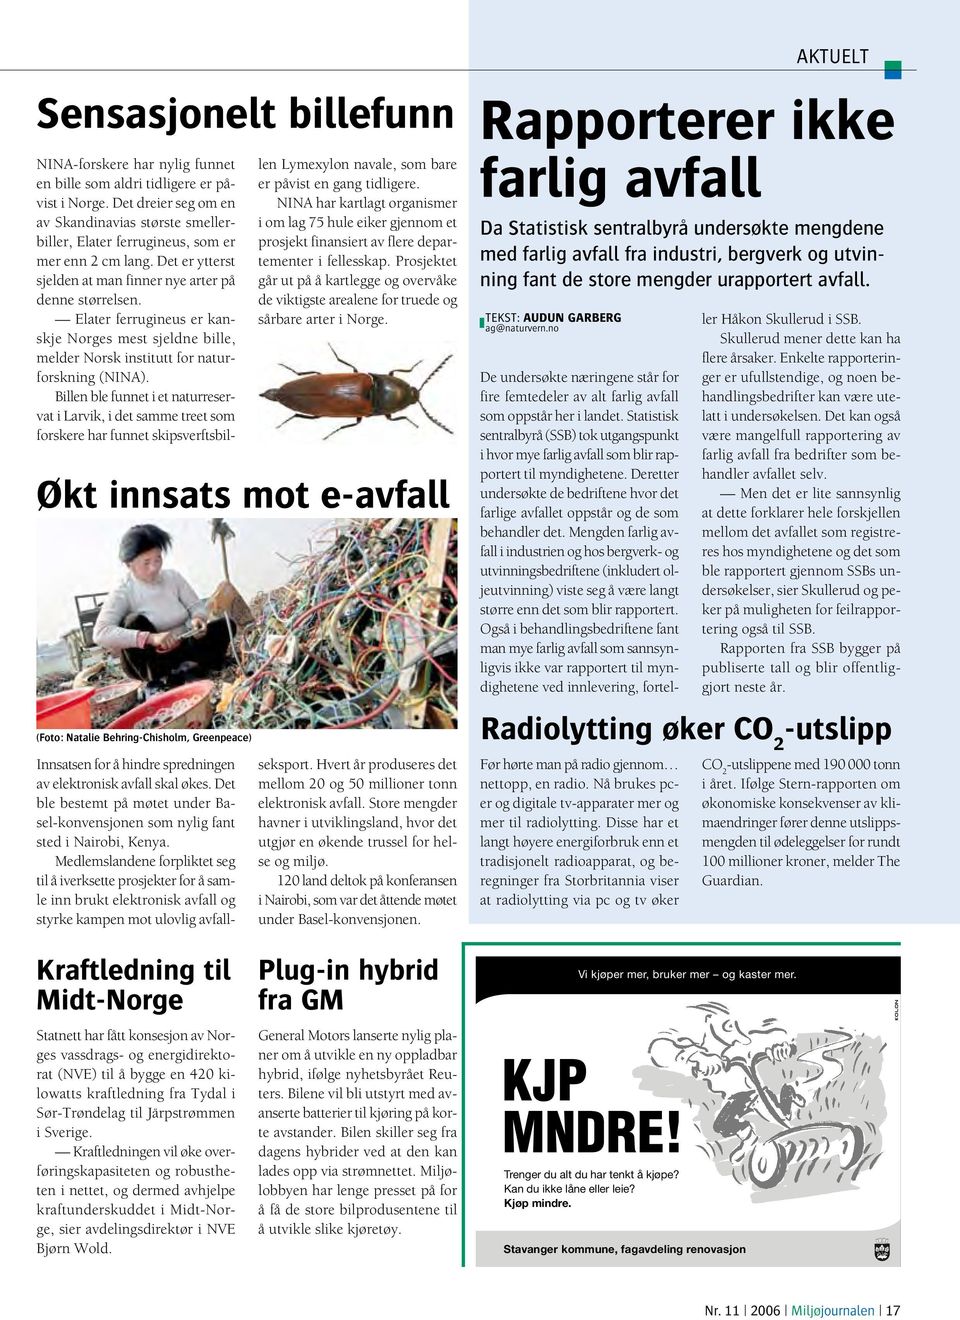 Elater ferrugineus er kanskje Norges mest sjeldne bille, melder Norsk institutt for naturforskning (NINA).